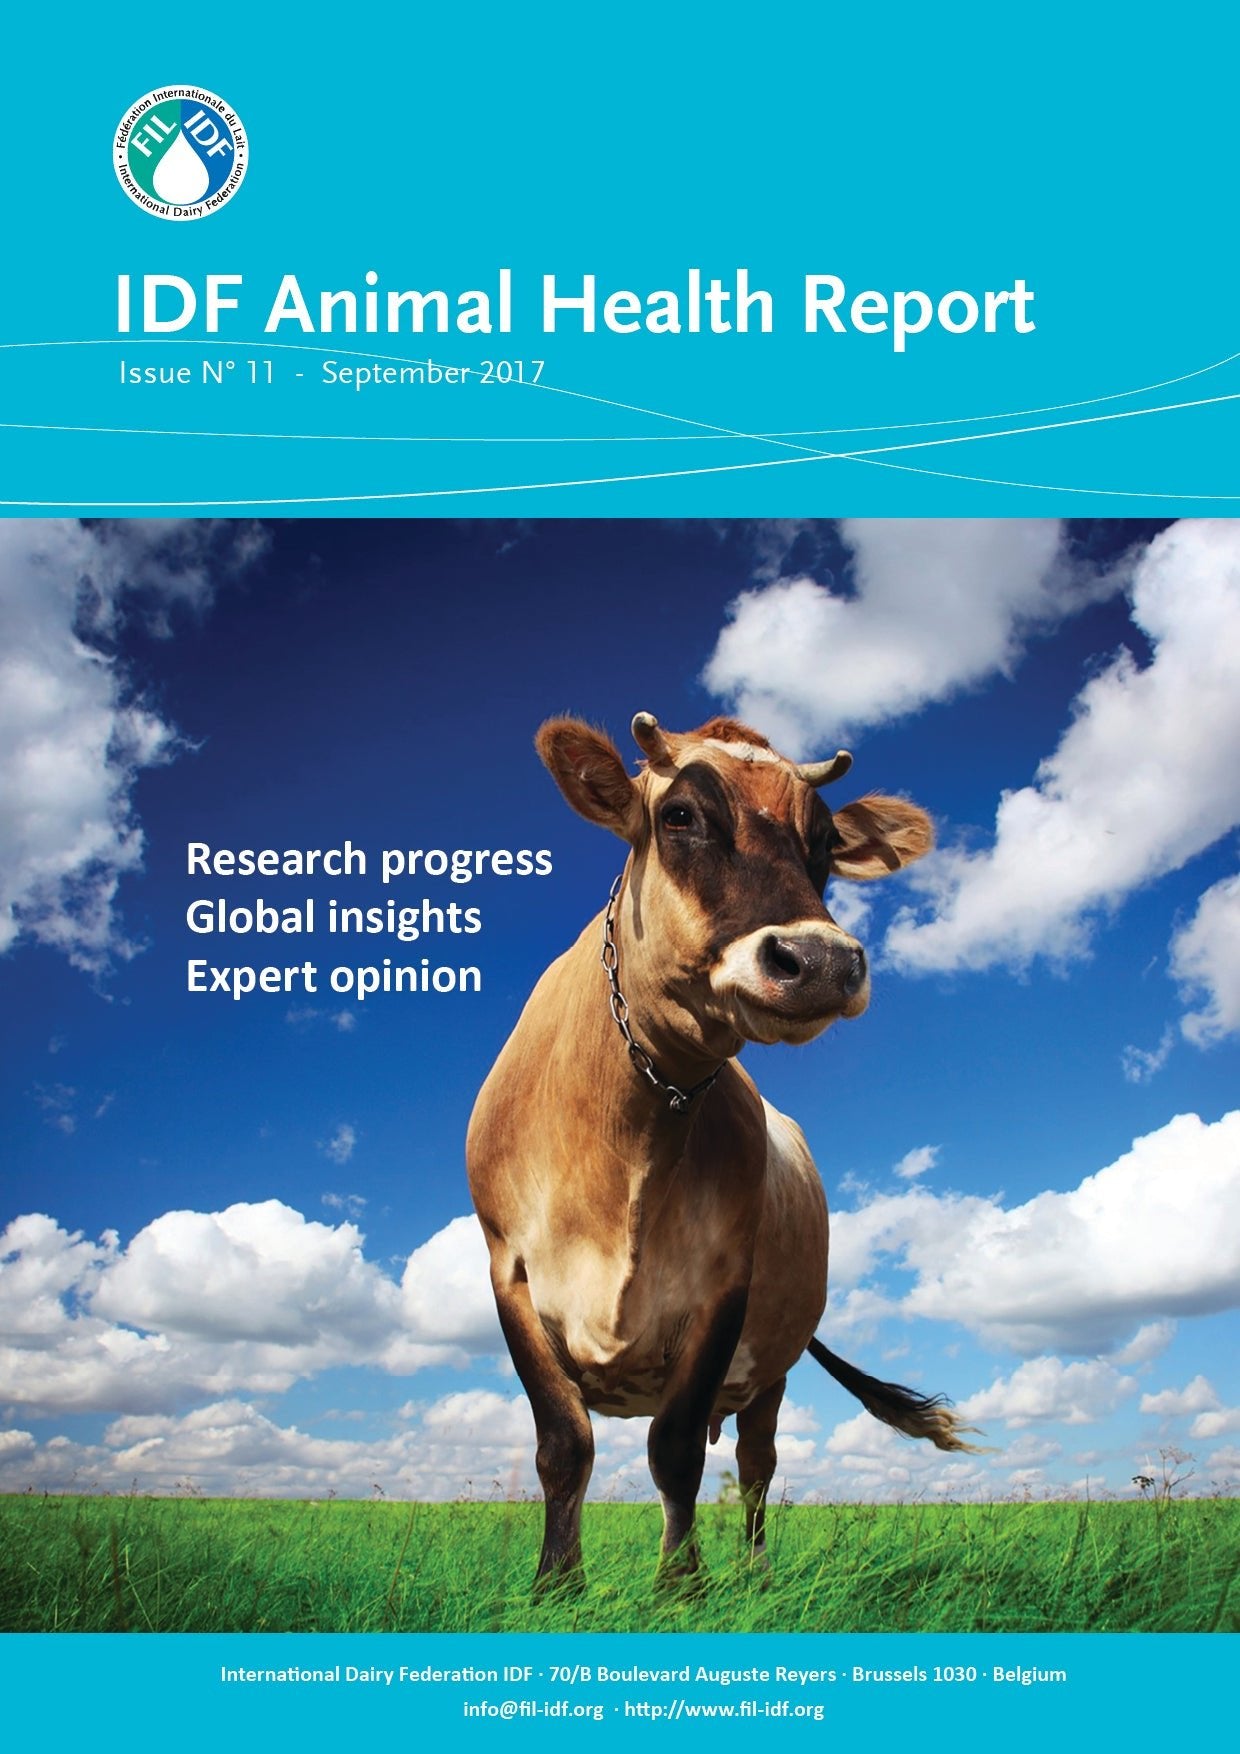 IDF Animal Health Report N° 11 - FIL-IDF